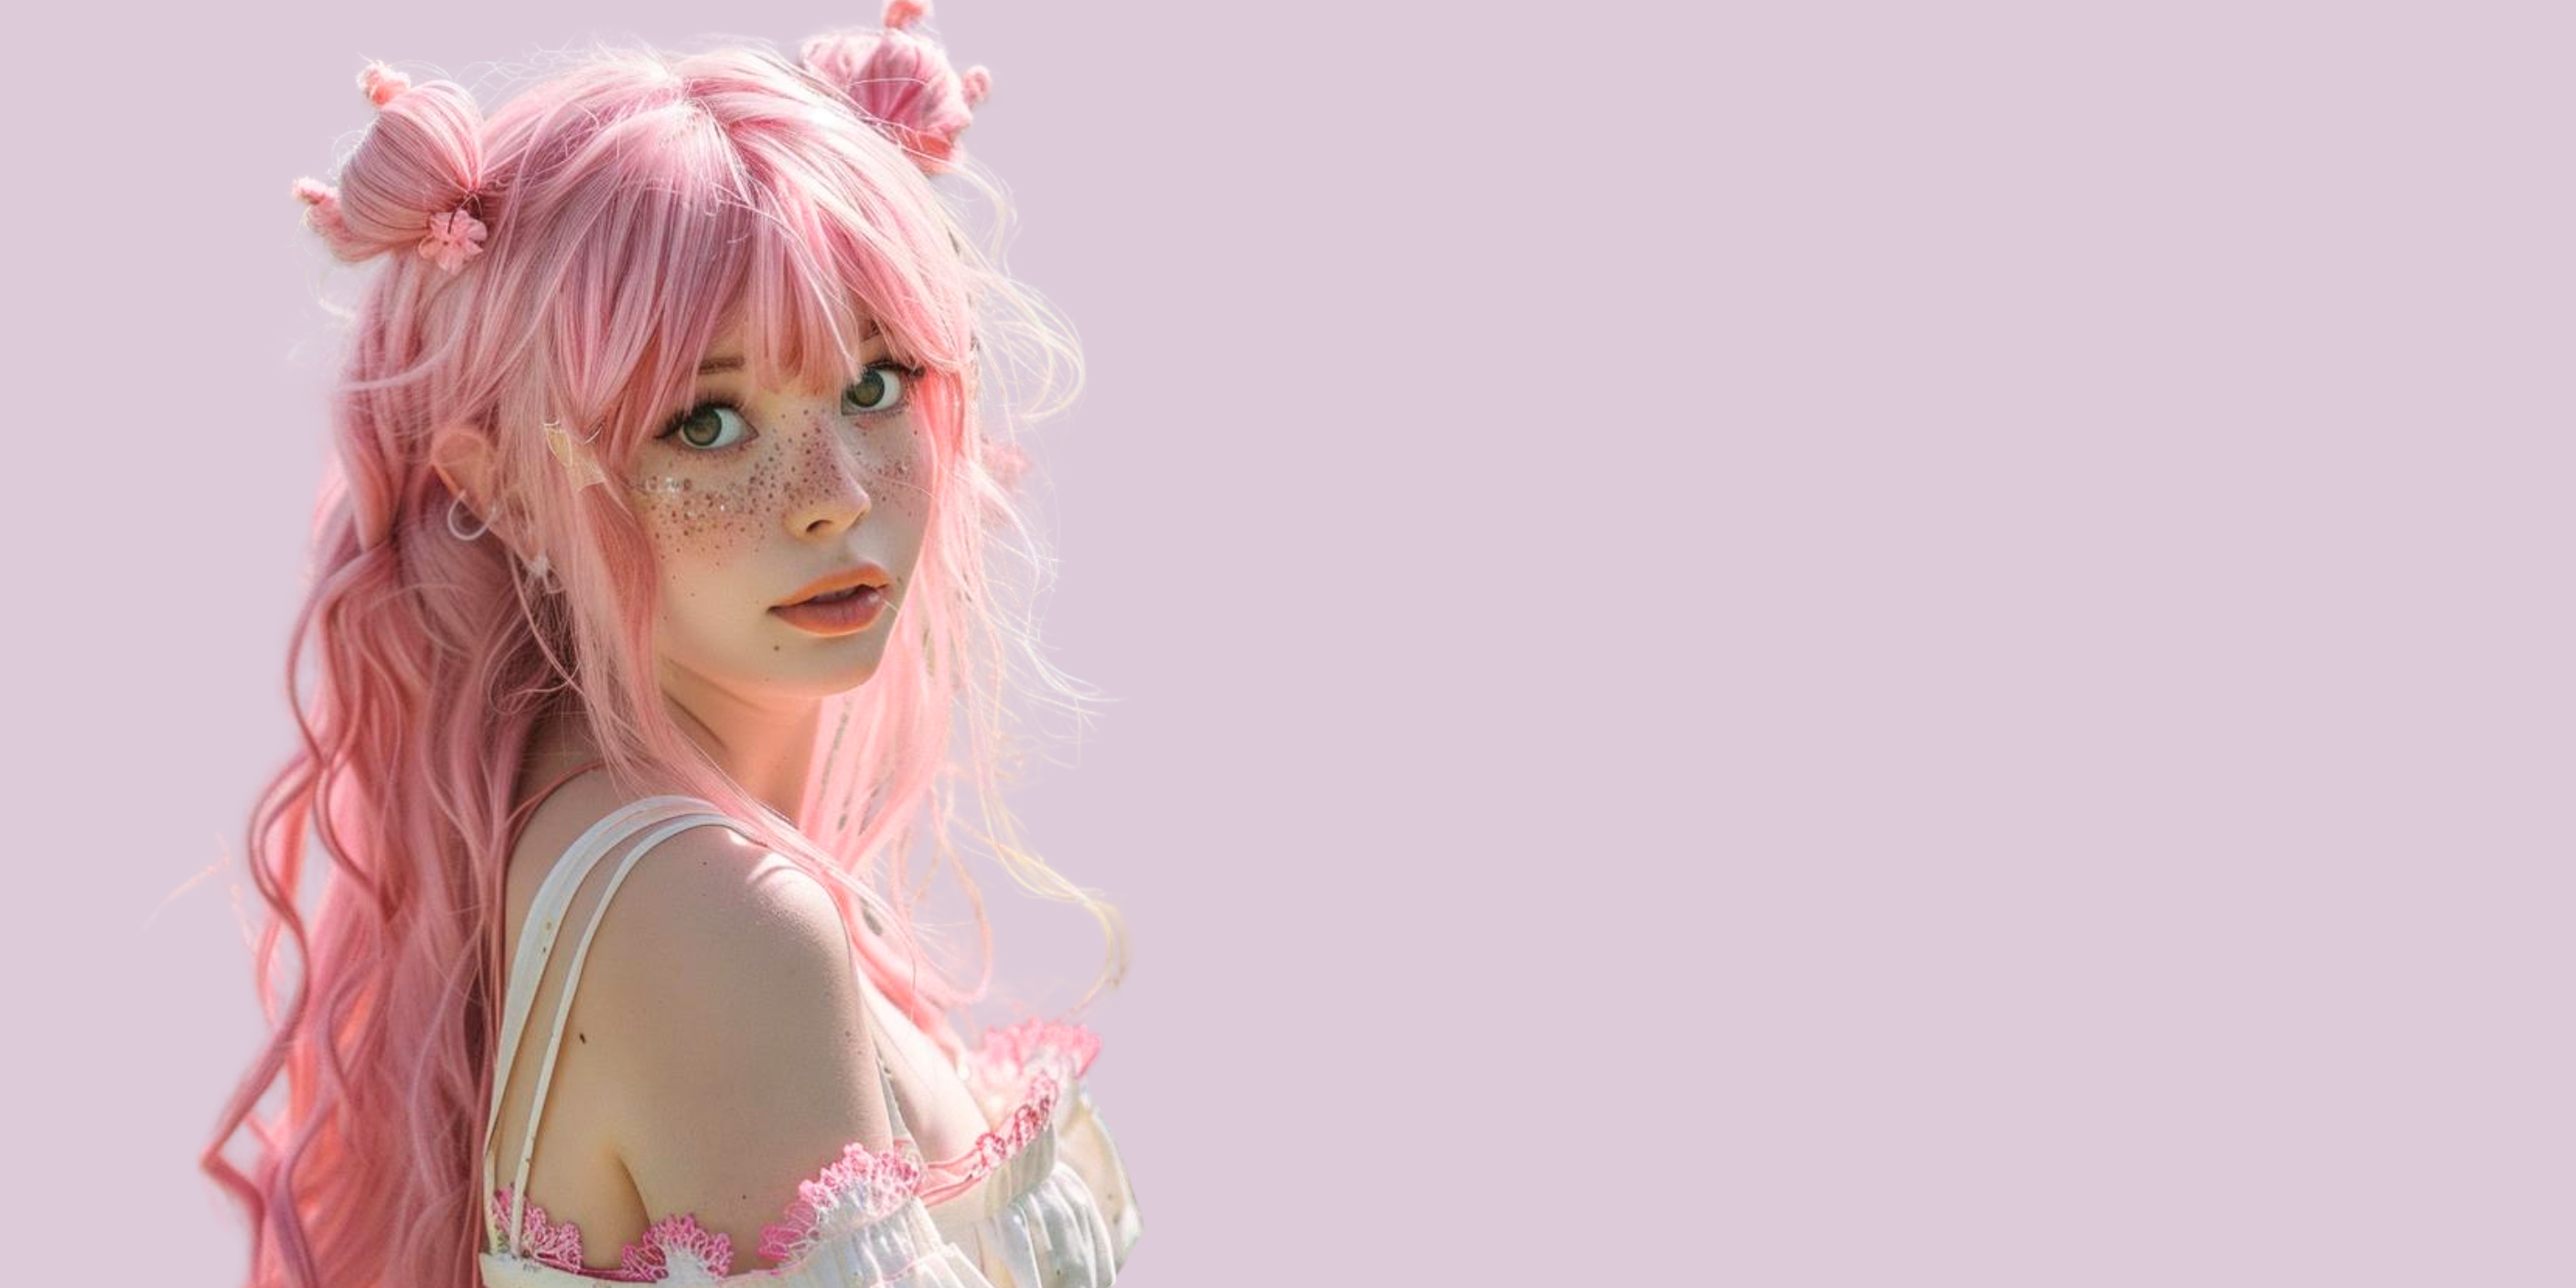 Long pink haired lady wearing false eyelashes